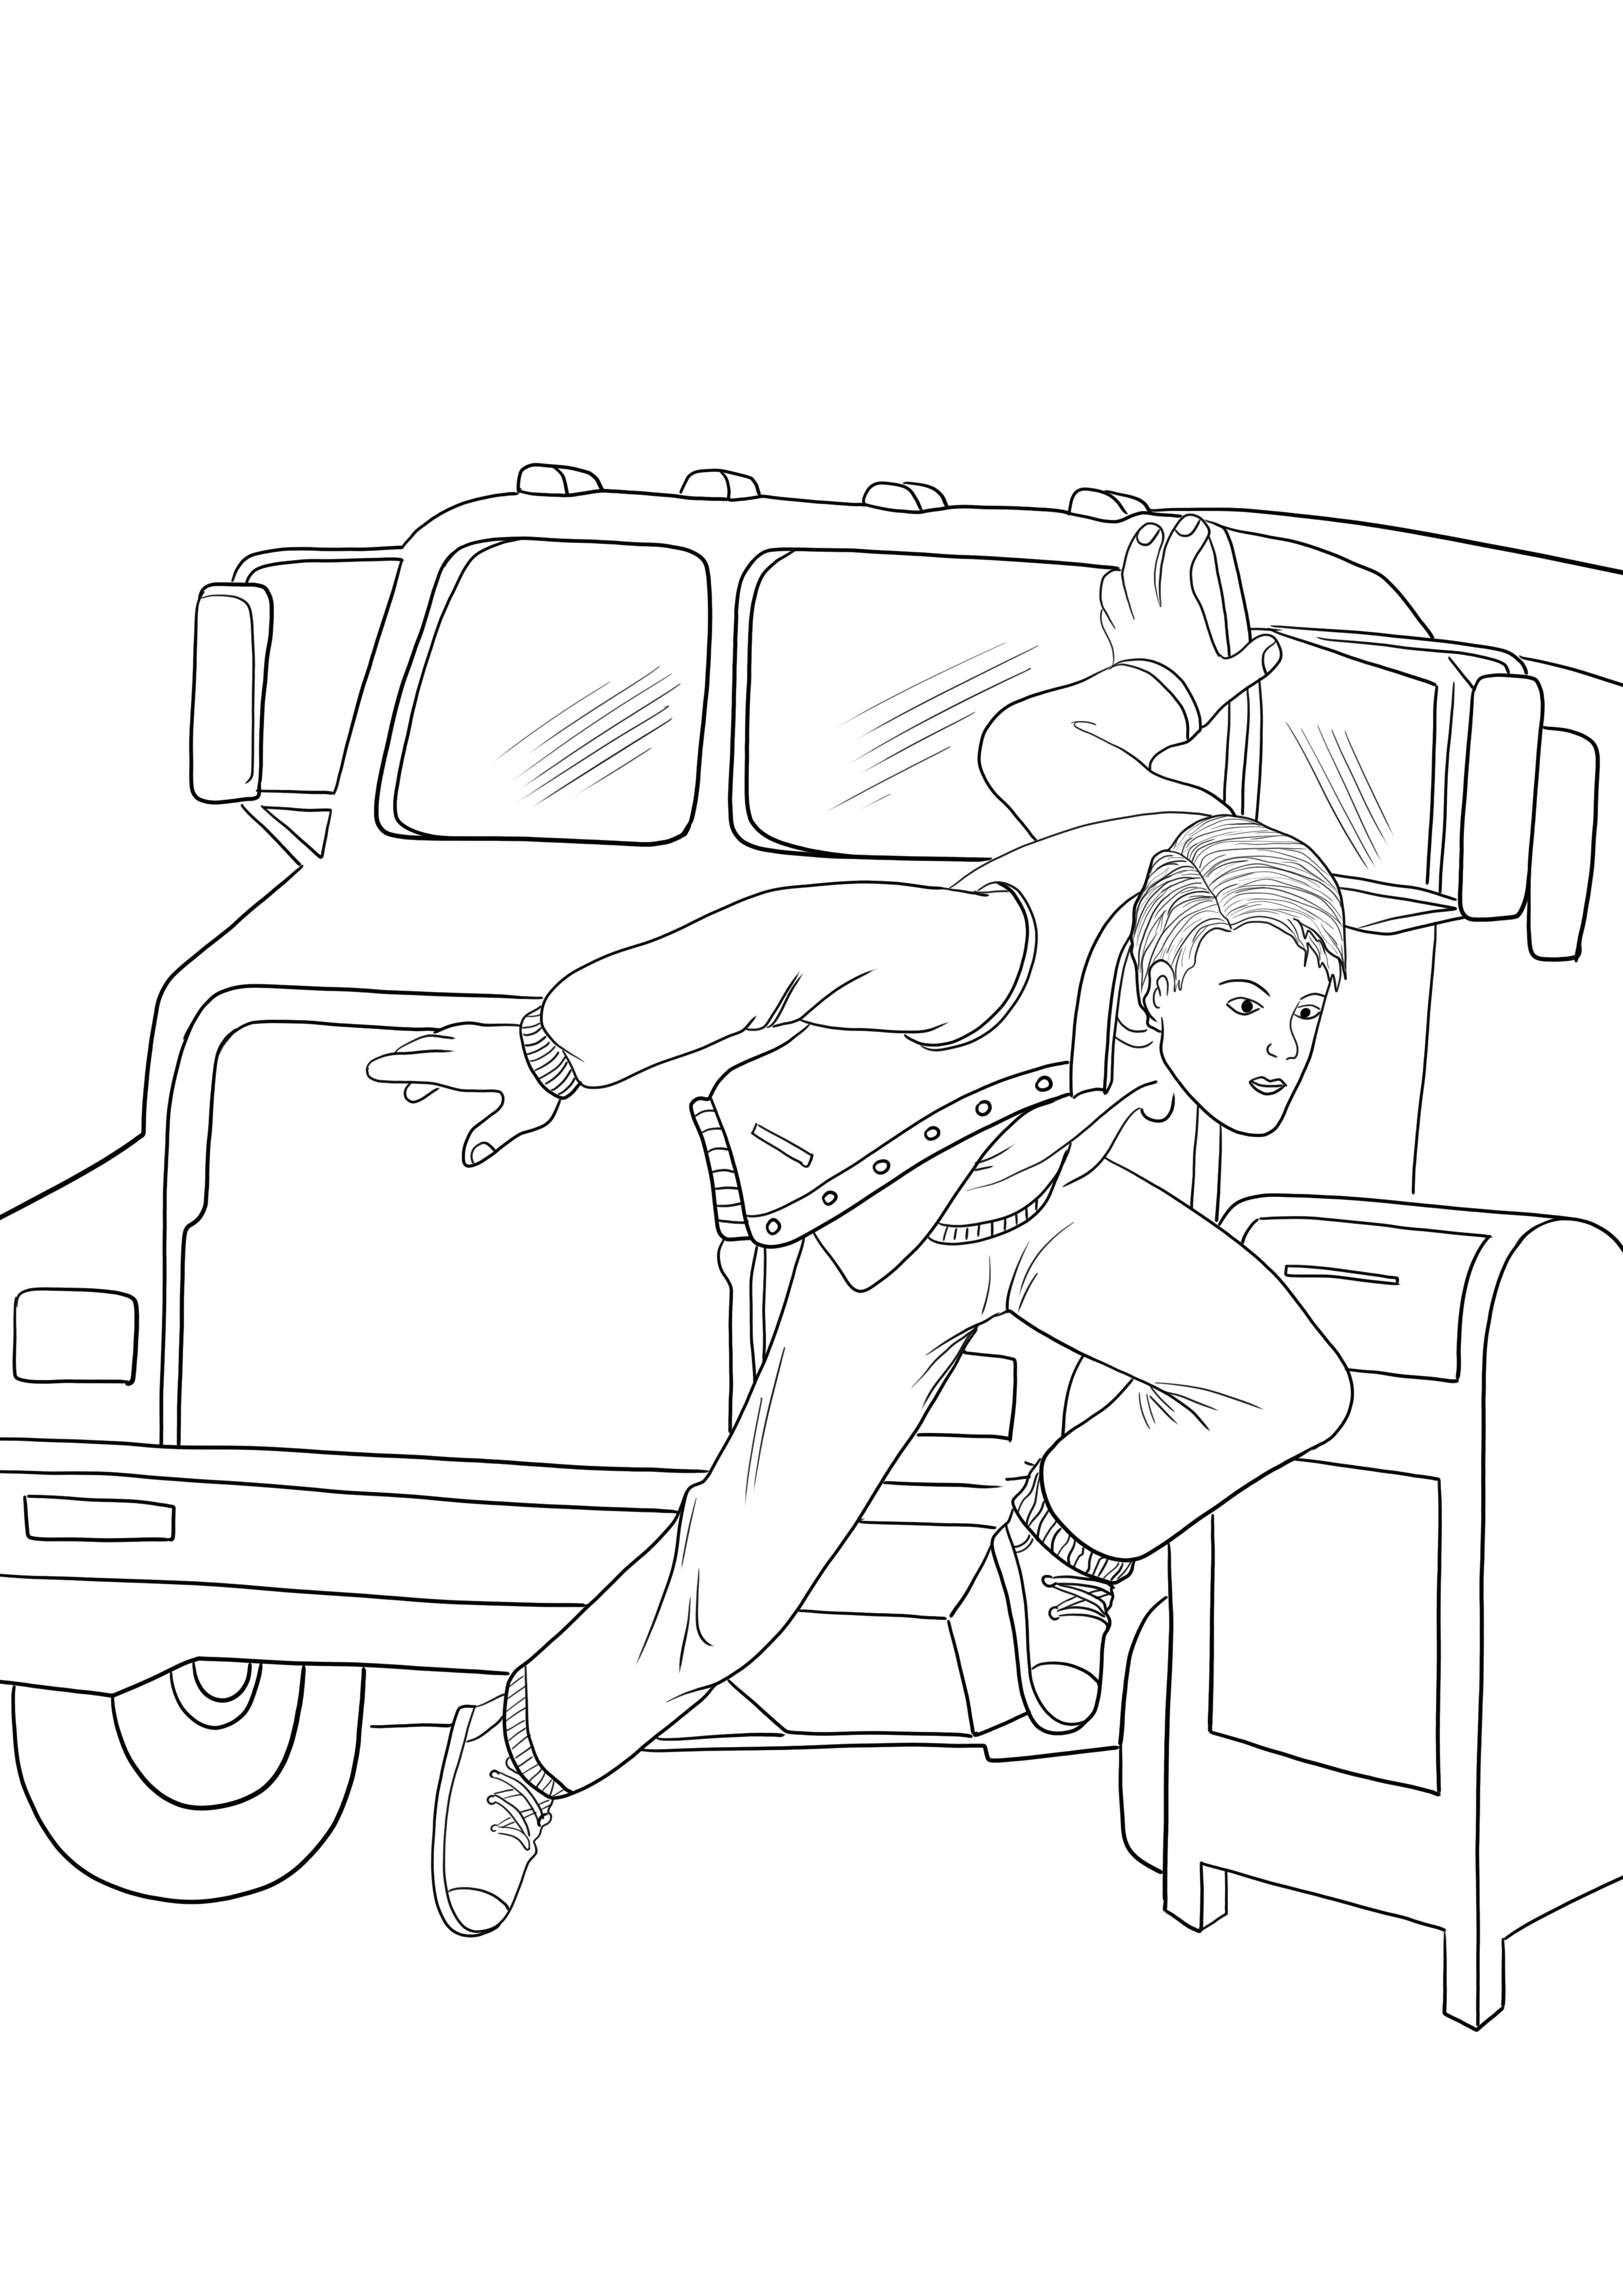 Łatwy do pokolorowania obraz Spidermana skaczącego z samochodu bez samochodu do wydrukowania